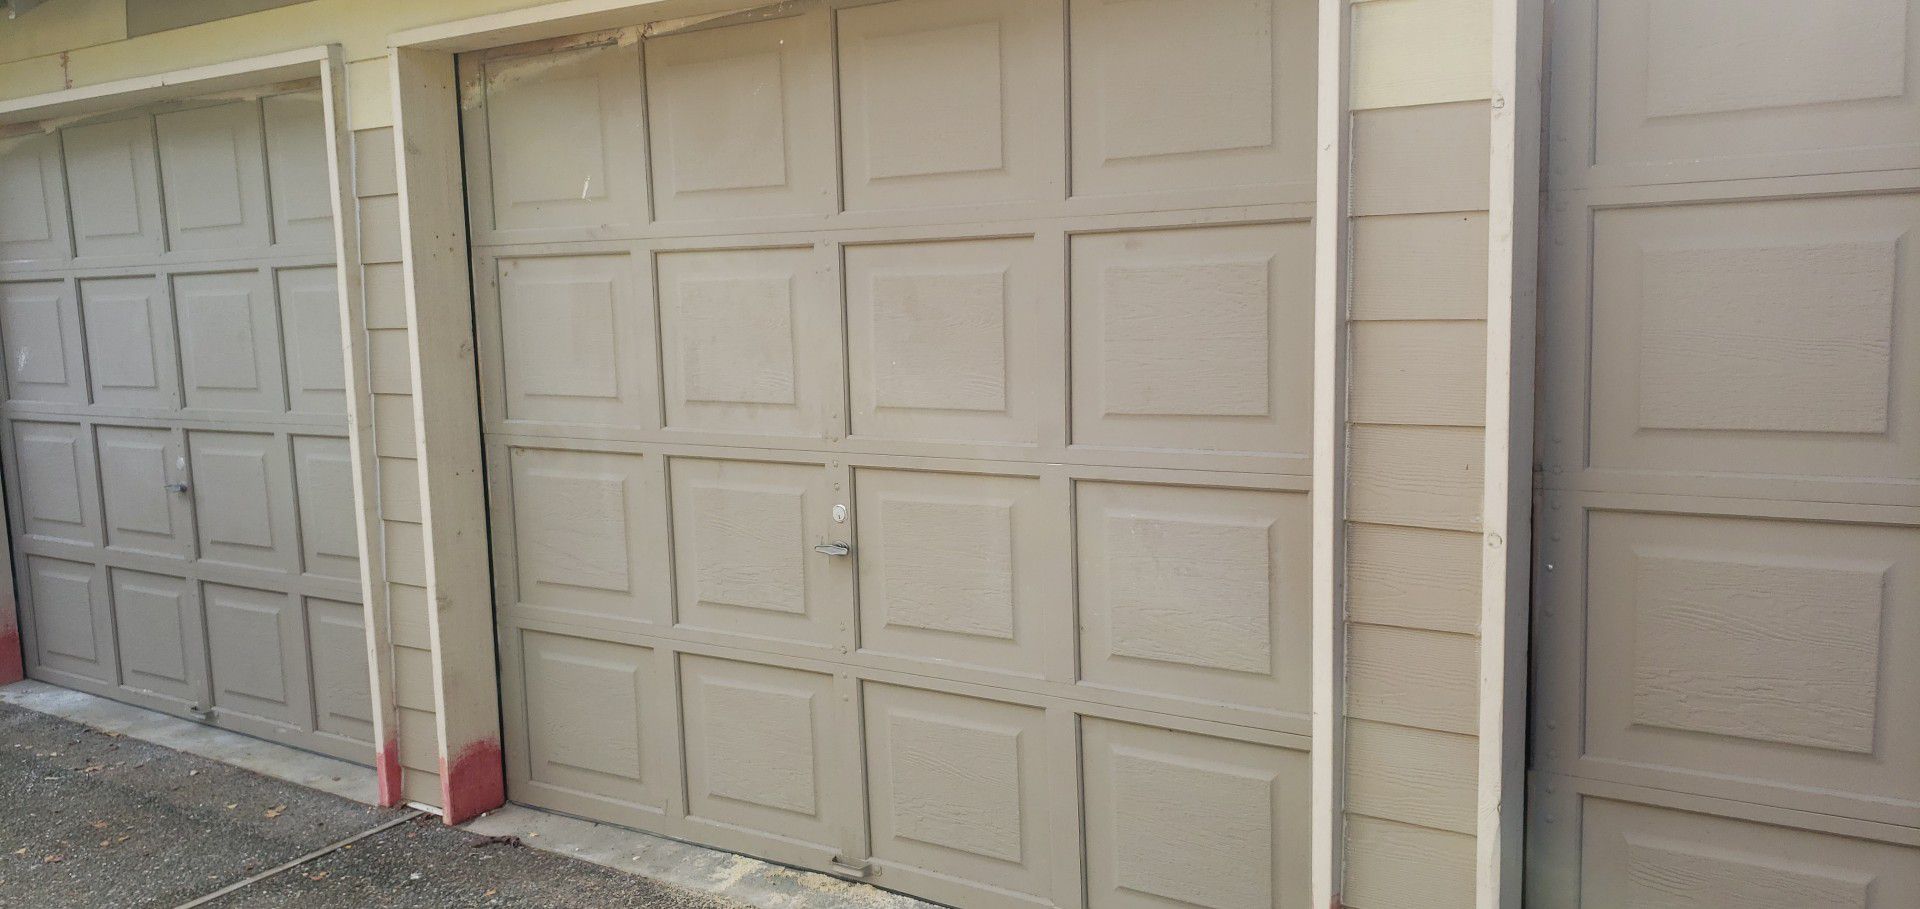 8ft×8ft garage doors good condition